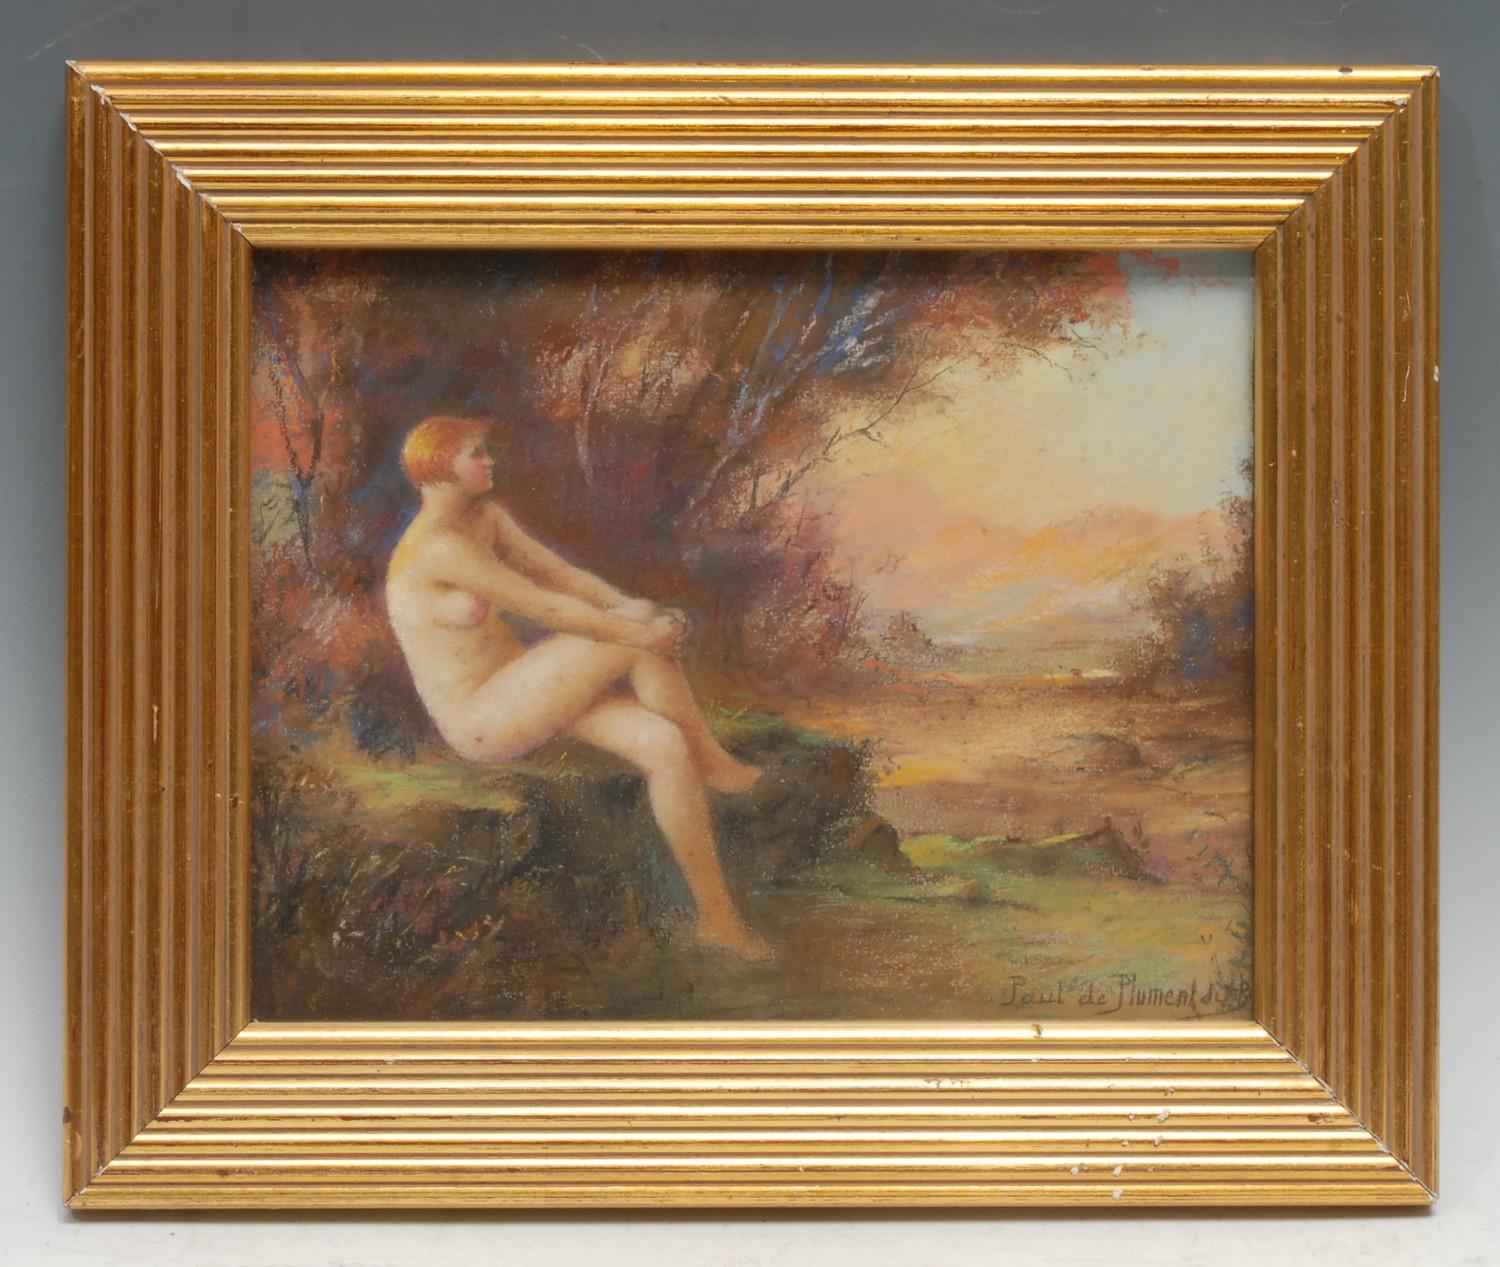 Paul de Plument de Bailhac (1864 ? 1951) Naked Female at Sunset signed, pastel, 19.5cm x 25cm - Image 4 of 4